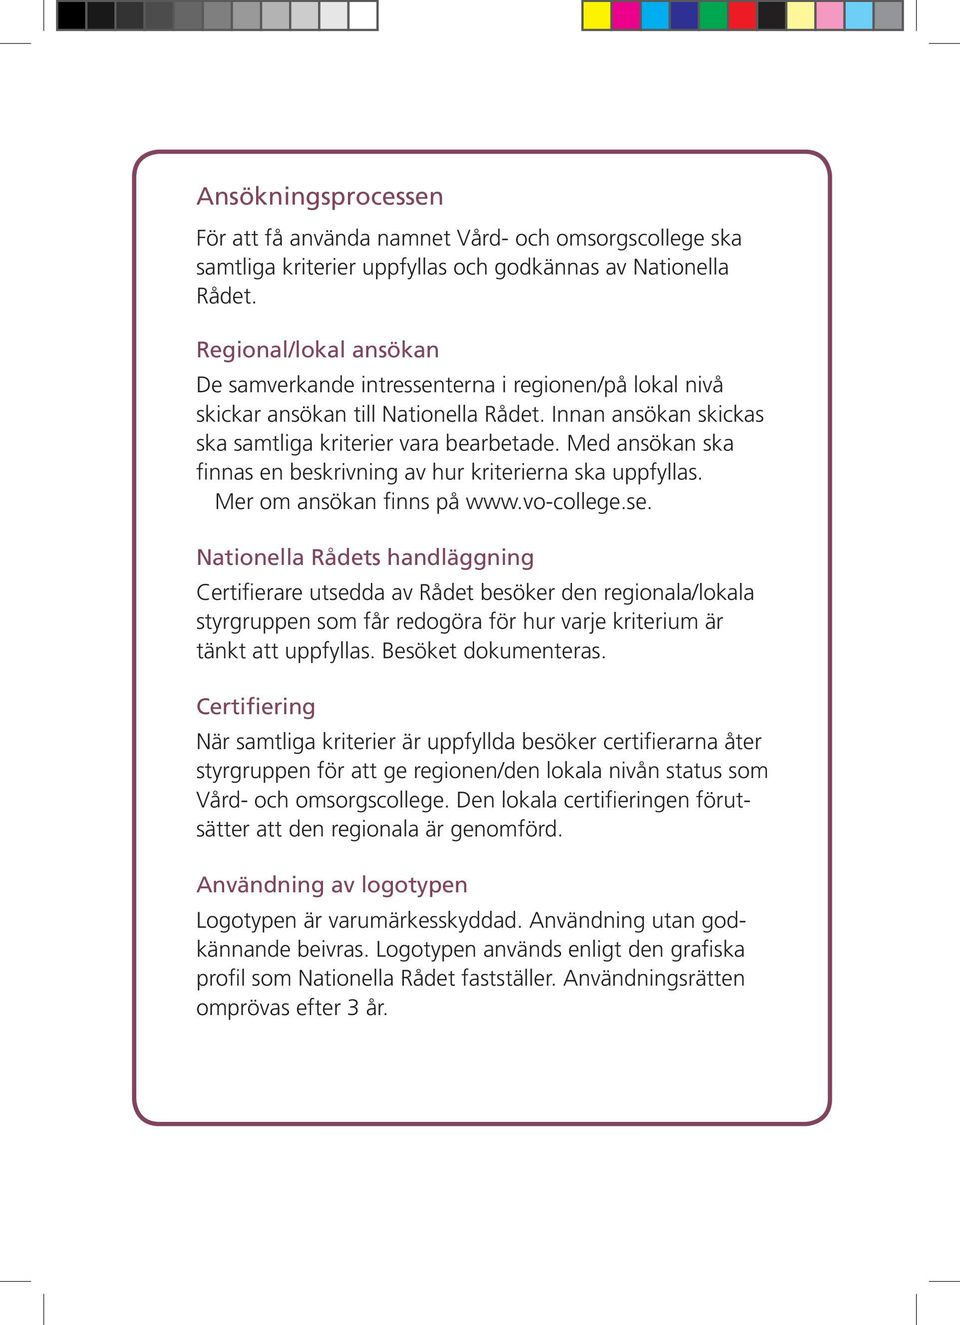 Med ansökan ska finnas en beskrivning av hur kriterierna ska uppfyllas. Mer om ansökan finns på www.vo-college.se.